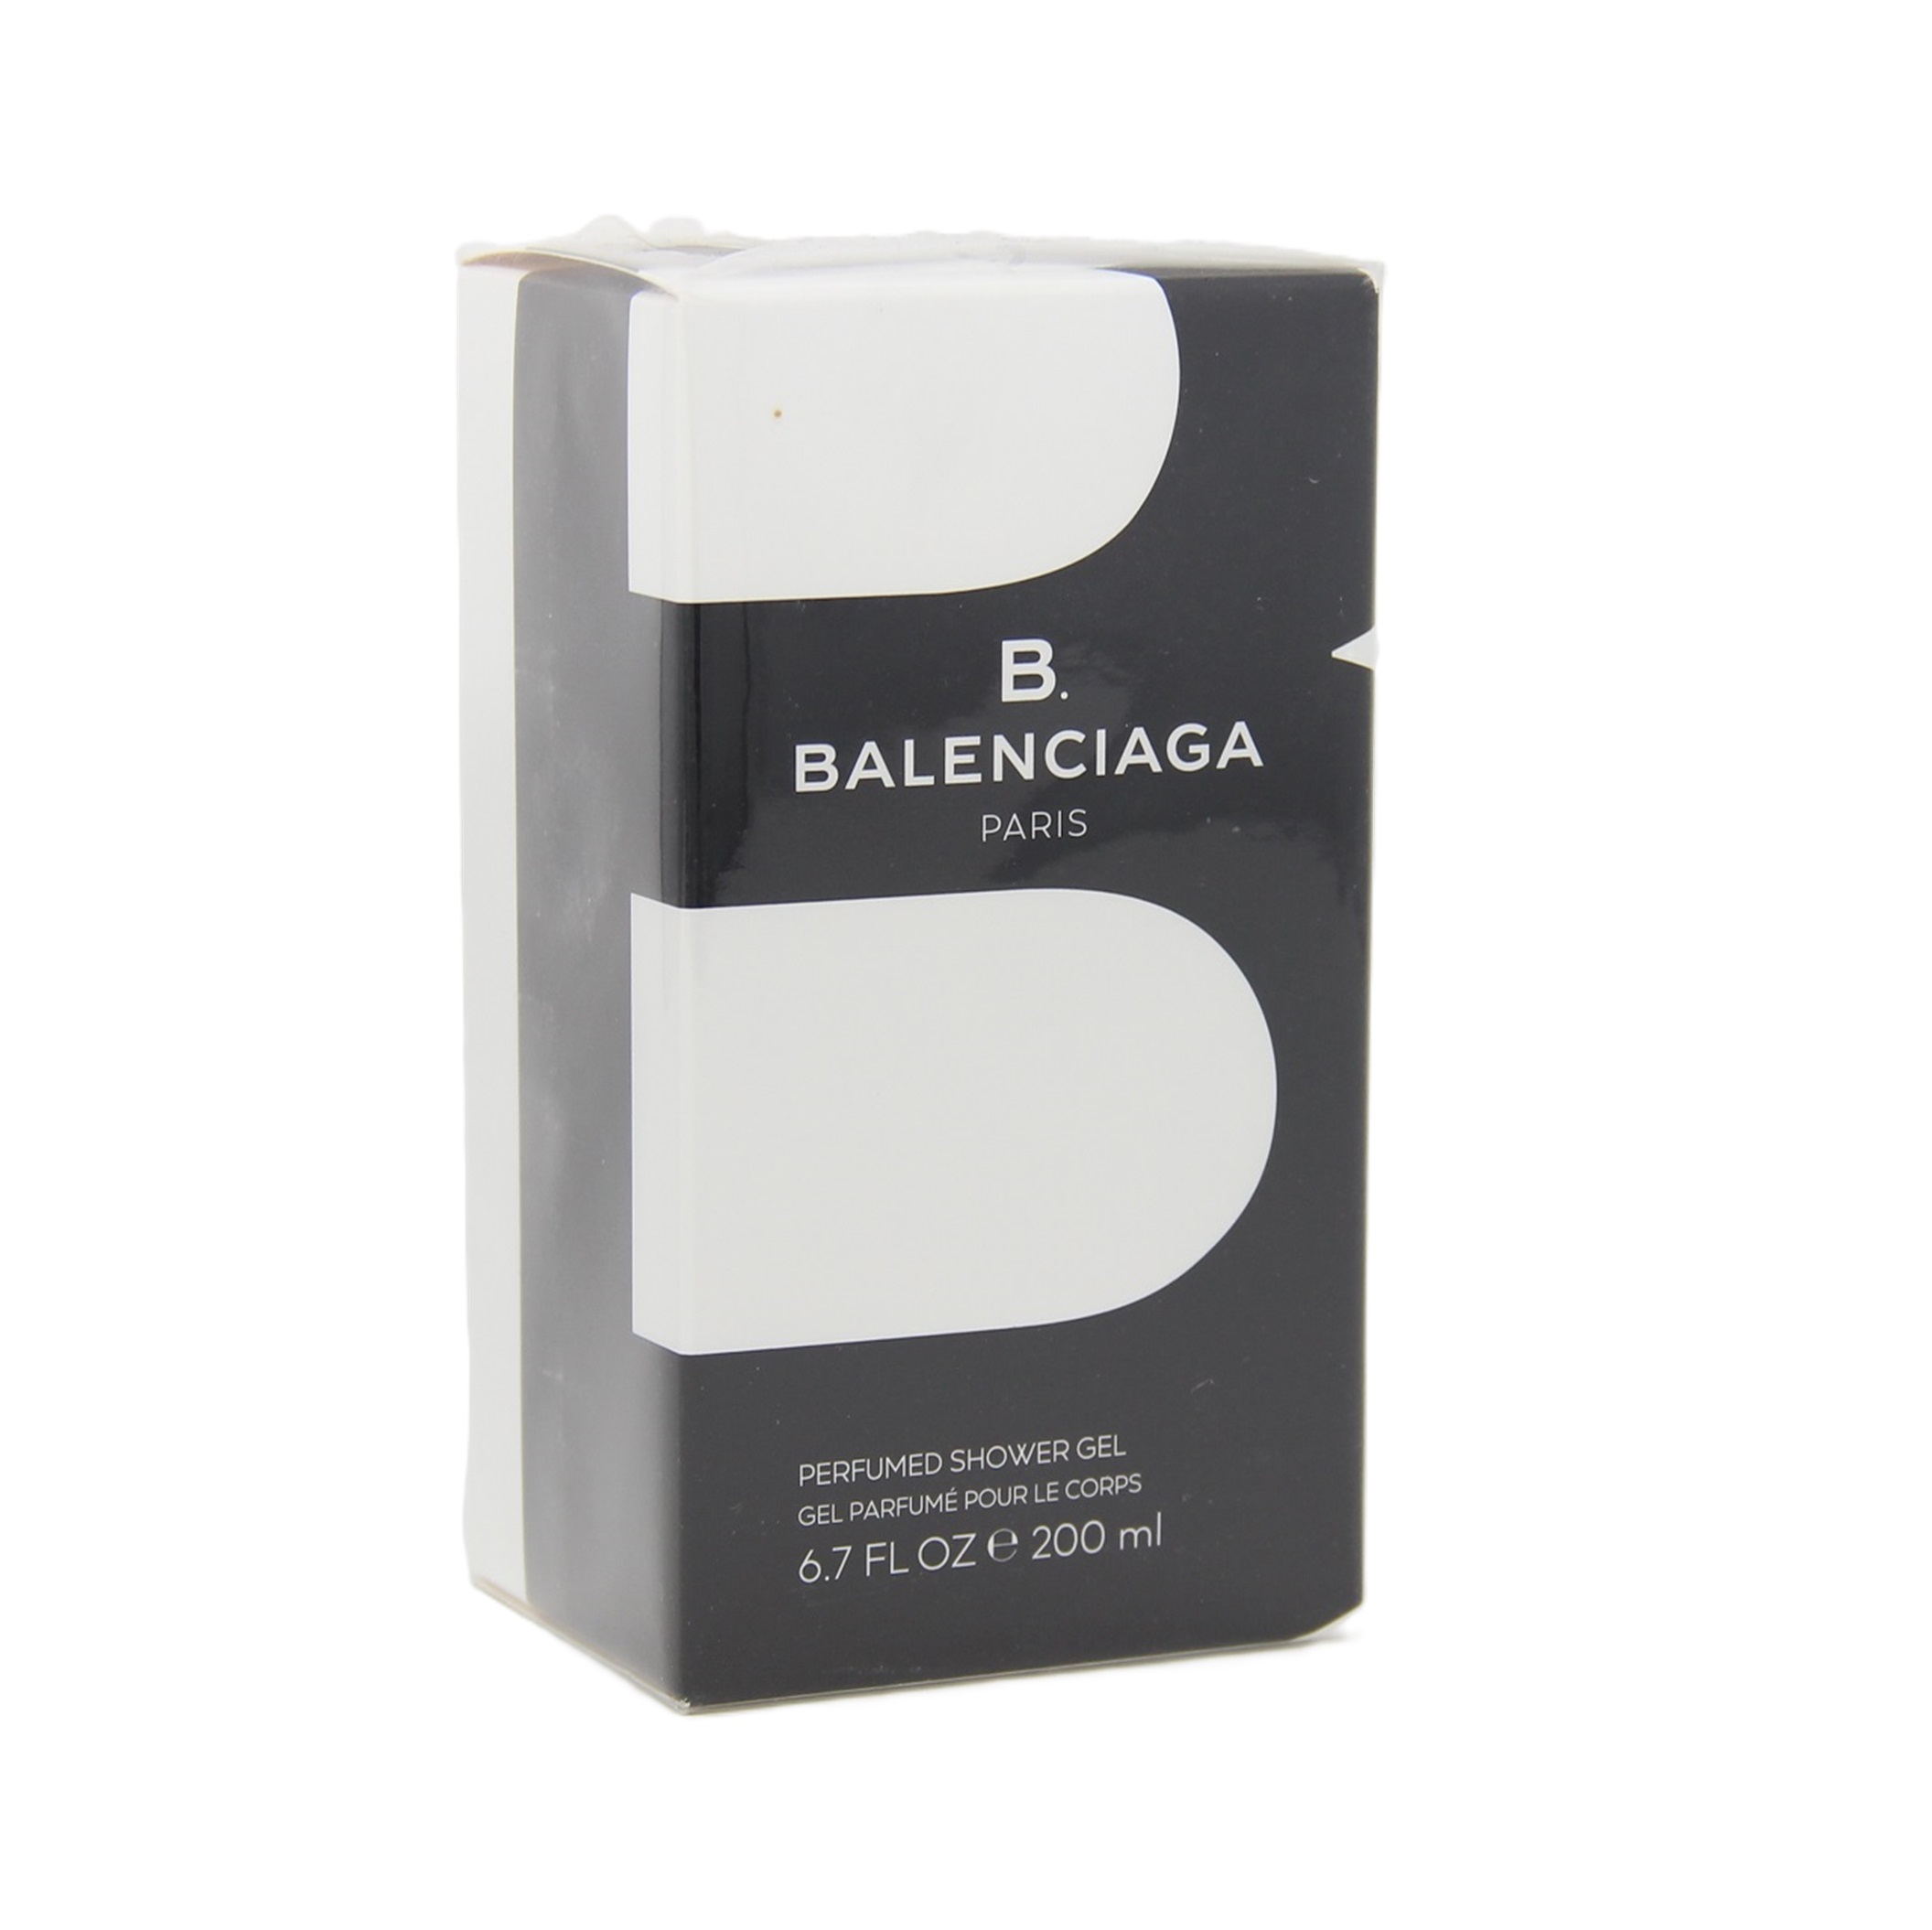 Balenciaga B. Perfumed Shower Gel 200ml